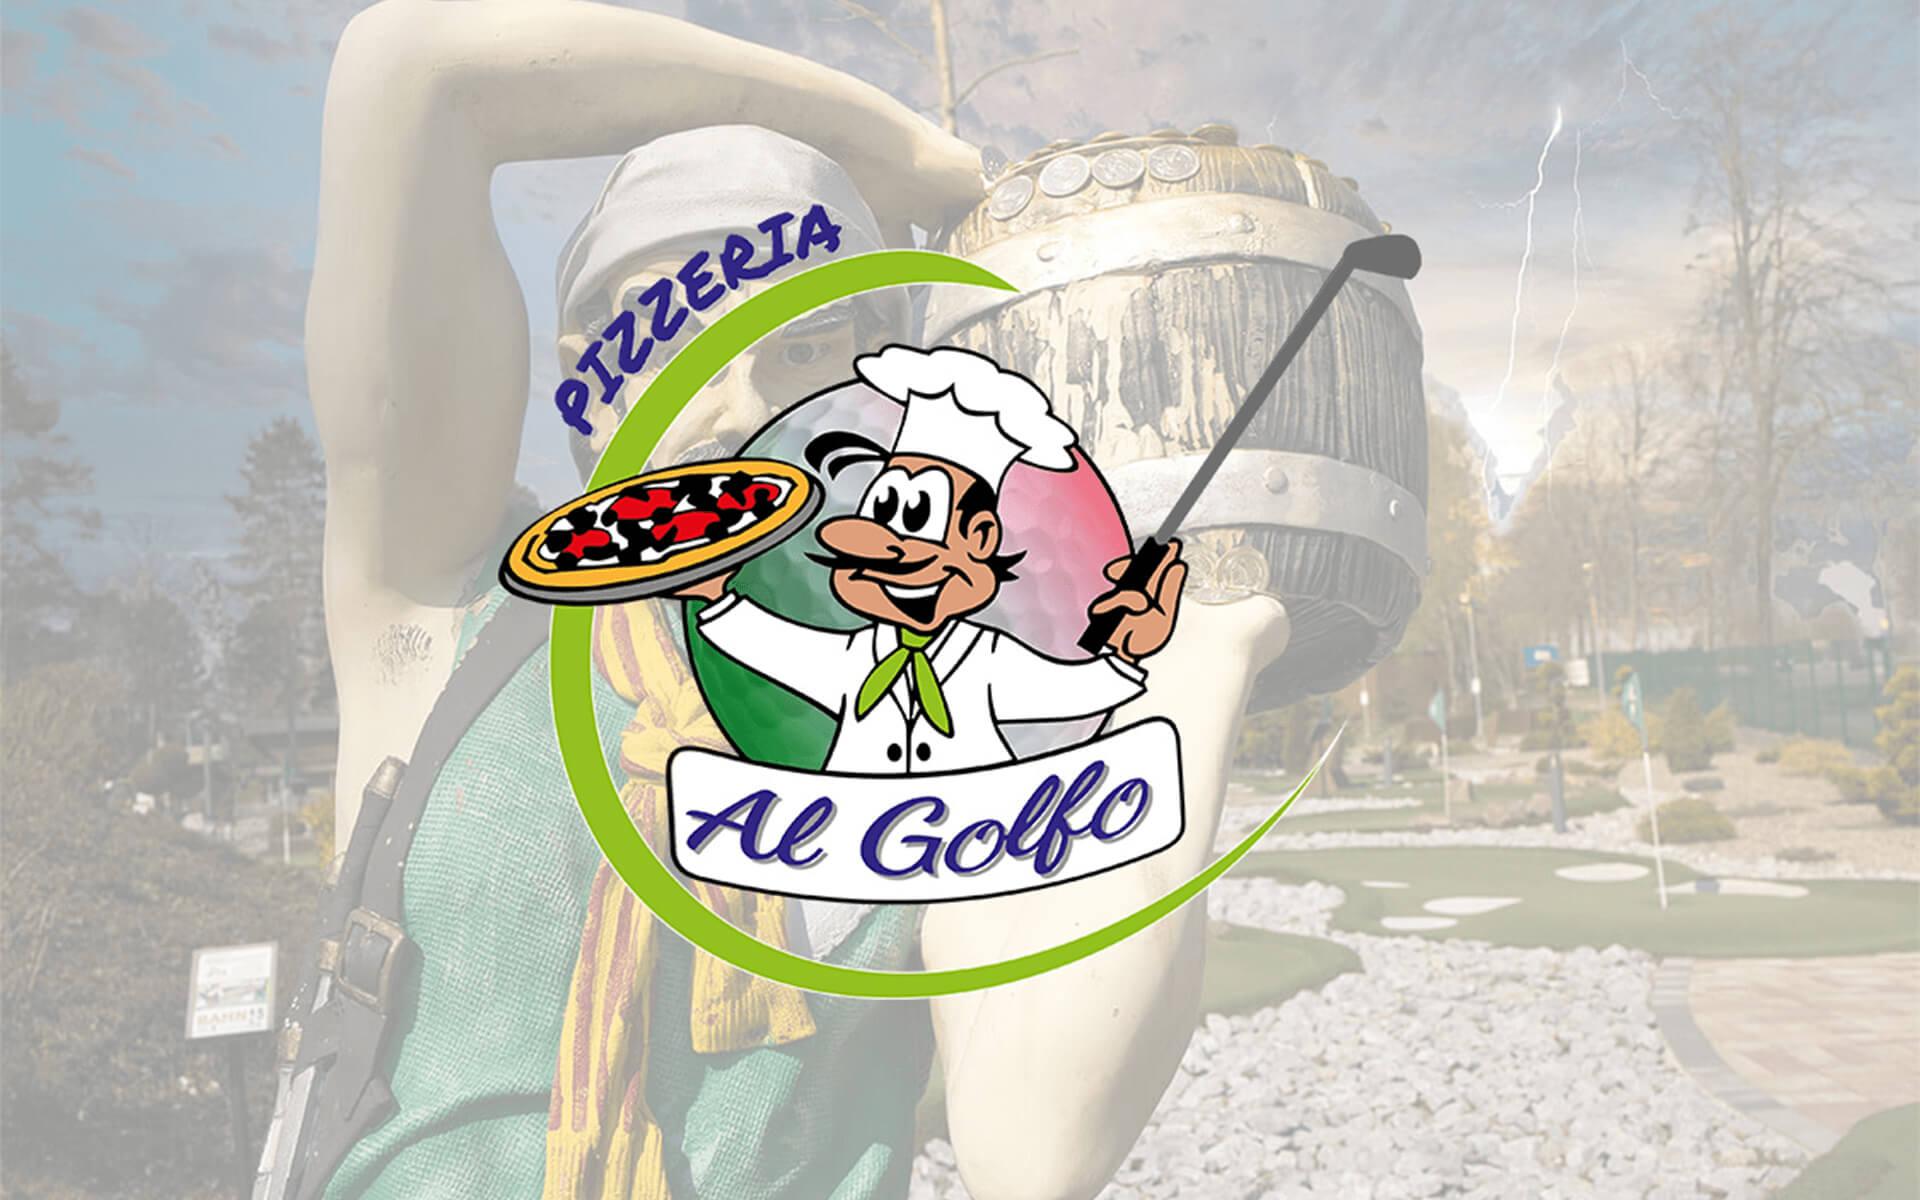 Ticket Golfturnier 6. AL GOLFO-Cup am 16. Juli 2022